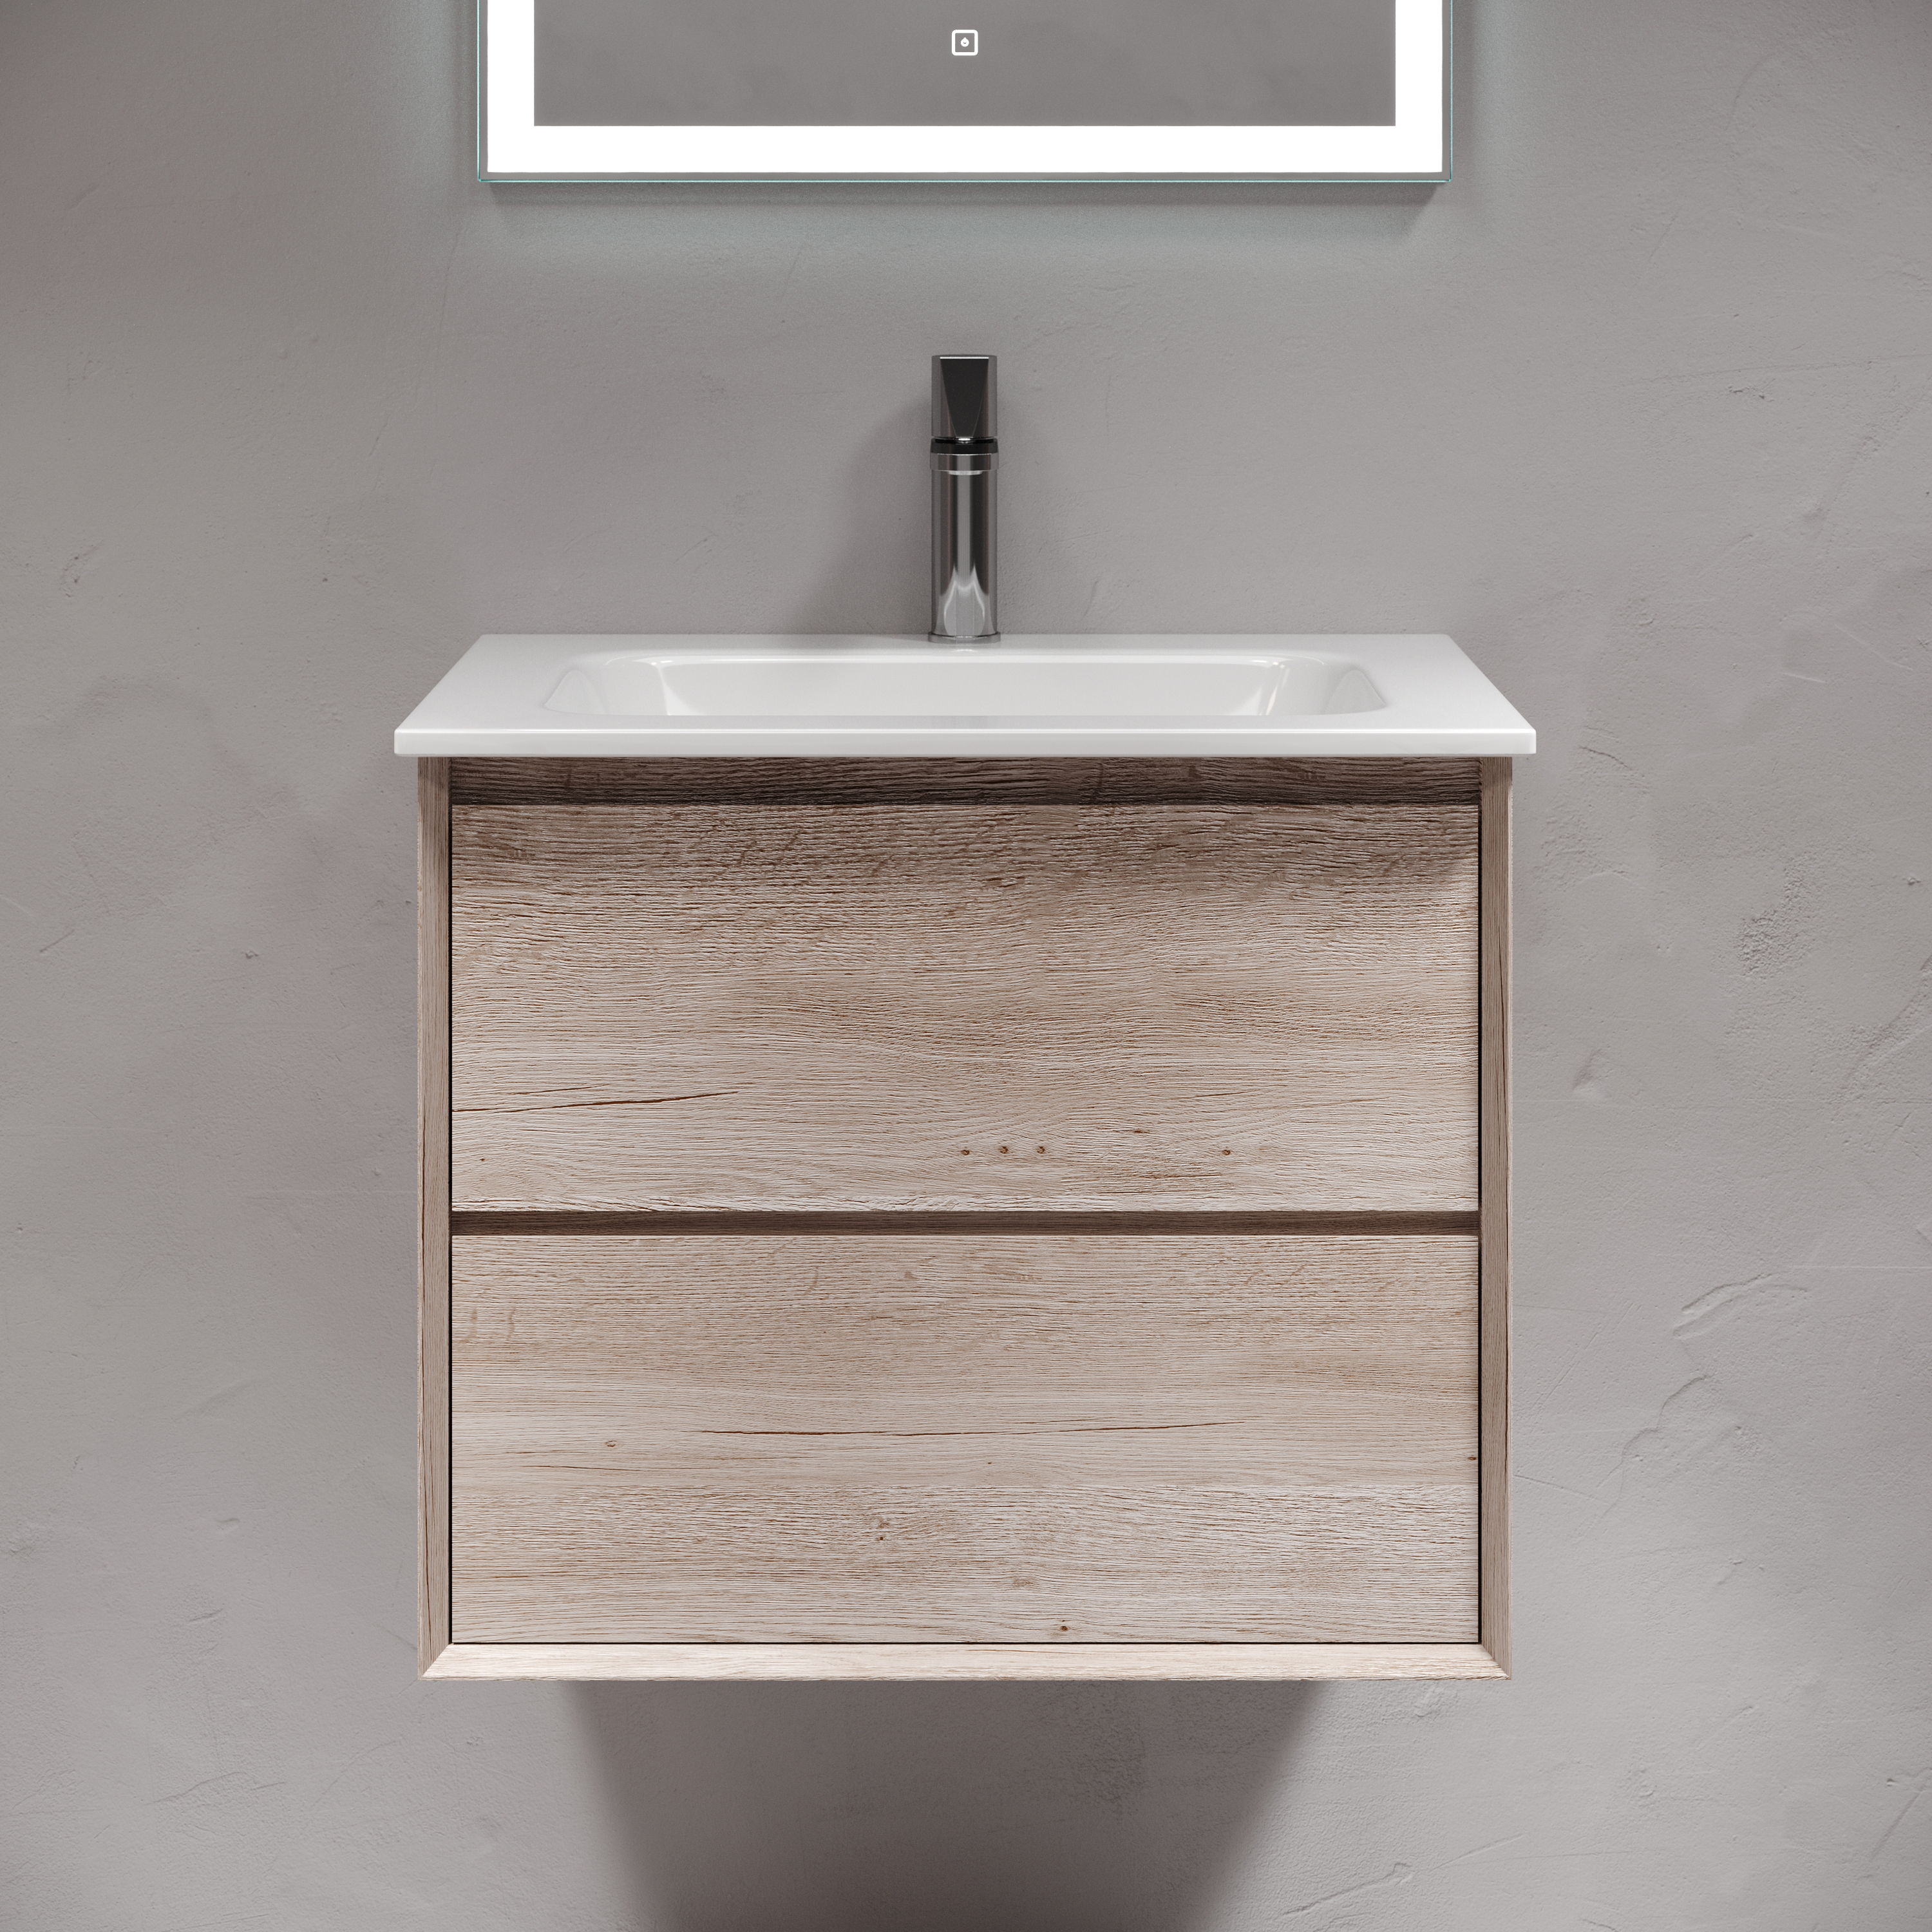 Мебель для ванной комнаты Sancos Marmi 2.0 60 см дуб галифакс натуральный, цвет коричневый MR2.060EG - фото 1